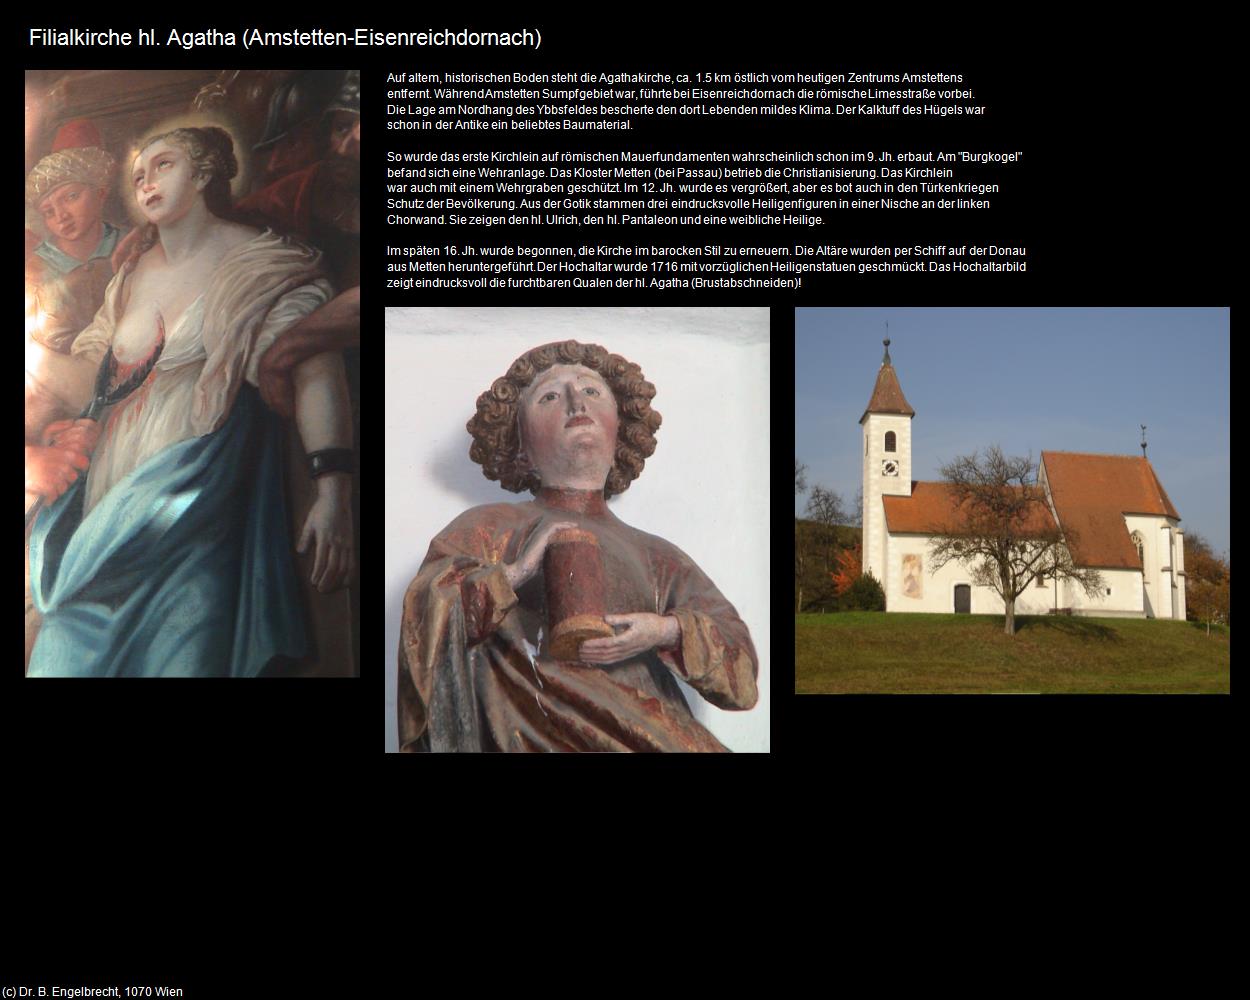 Fk. hl. Agatha (Eisenreichdornach) (Amstetten) in Kulturatlas-NIEDERÖSTERREICH